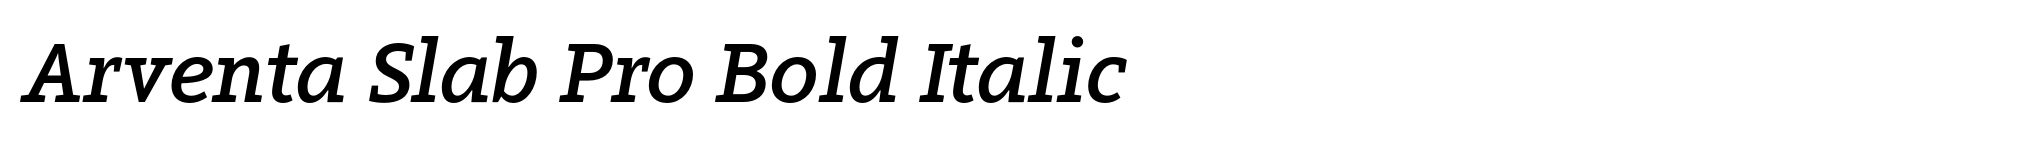 Arventa Slab Pro Bold Italic image